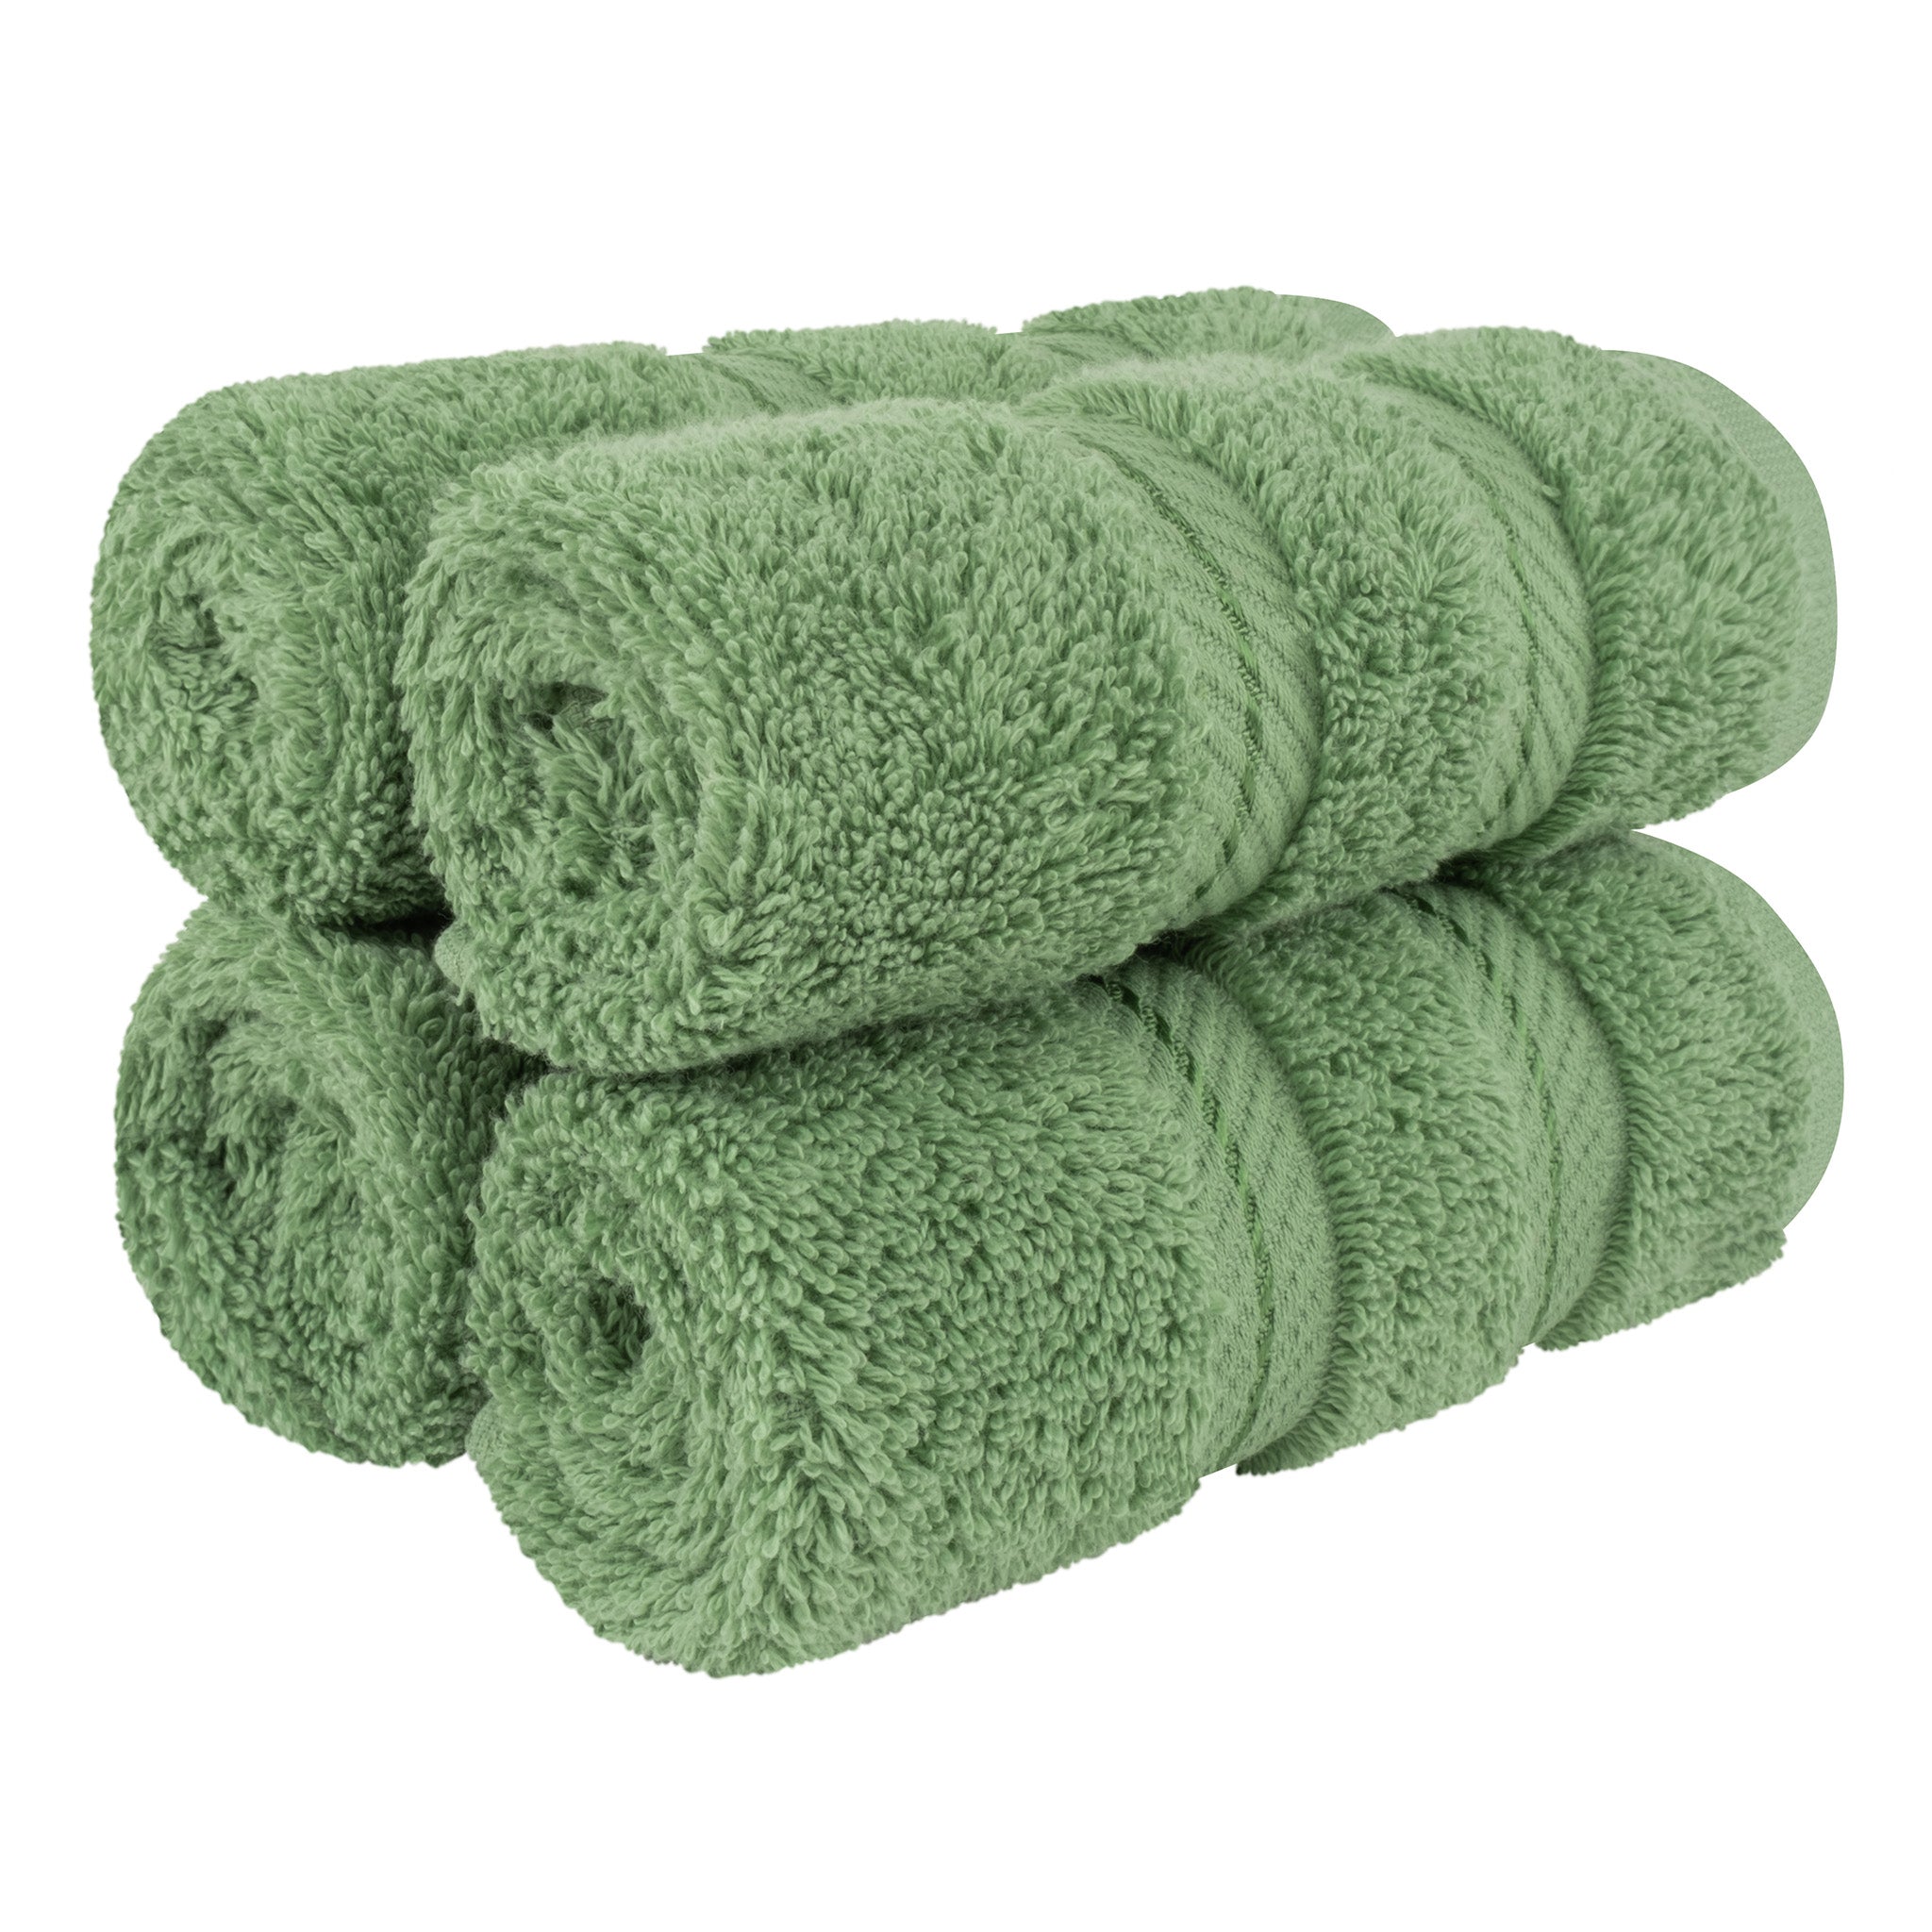  American Soft Linen 100% Turkish Cotton 4 Piece Washcloth Set - Wholesale - sage-green-1